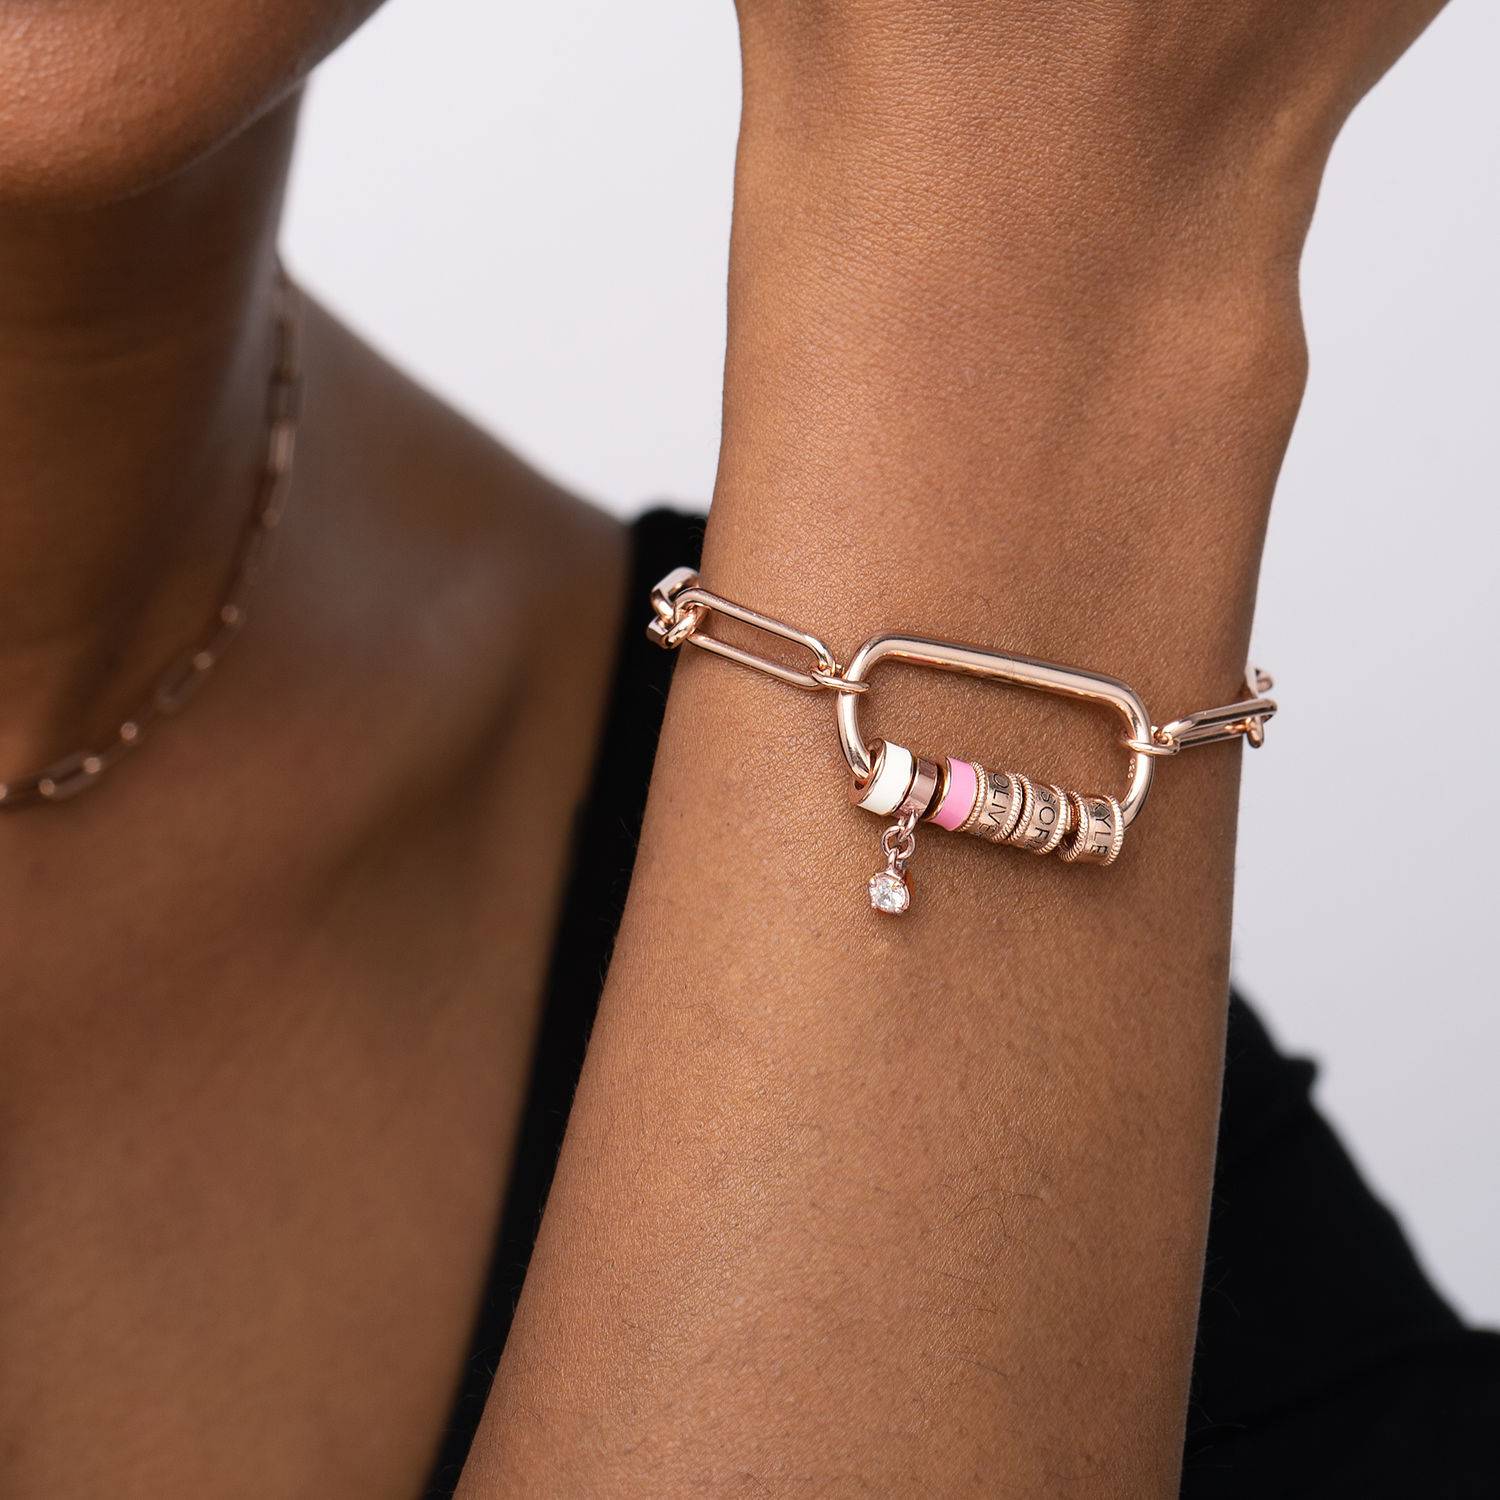 Linda-armband i 18K roséguldplätering med ovalt spänne och pärla-2 produktbilder